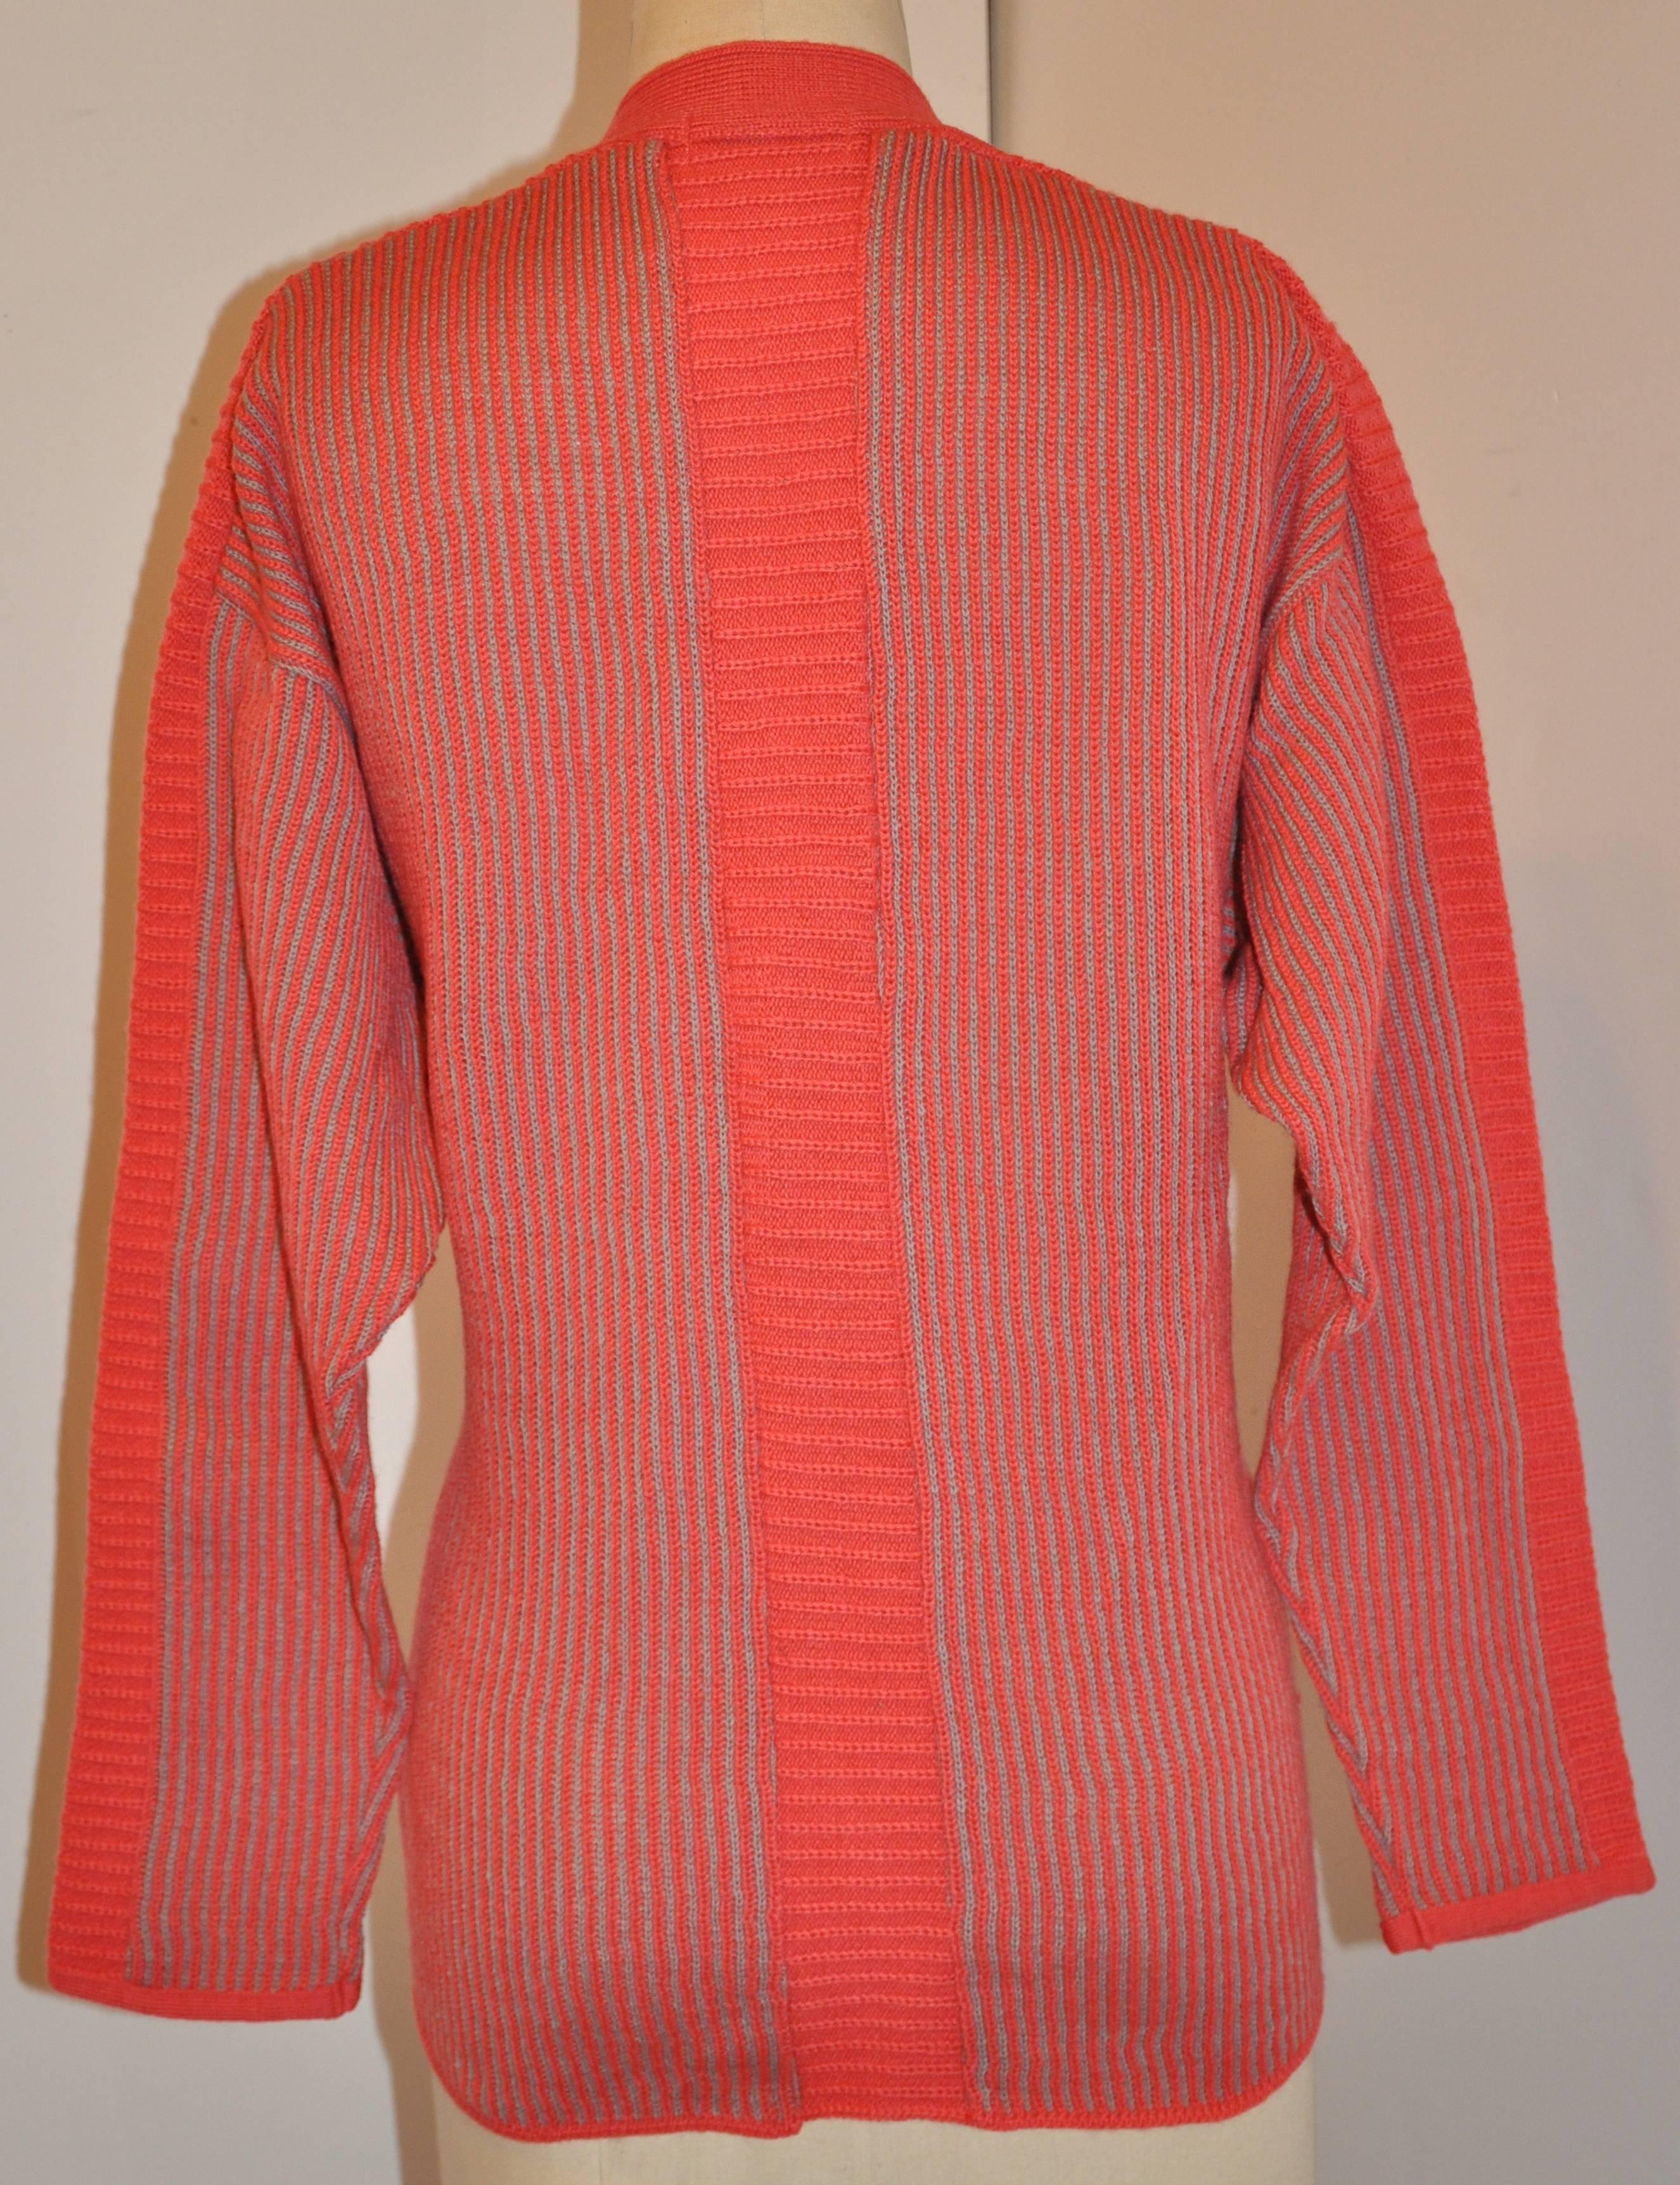        Ce rare cardigan Kansai Yamamoto en laine côtelée multicolore dans des tons de gris, de corail, de rouge accentués par de l'argent métallique combiné aux détails brodés à la main sur le devant. Pour mettre en valeur la broderie détaillée, des